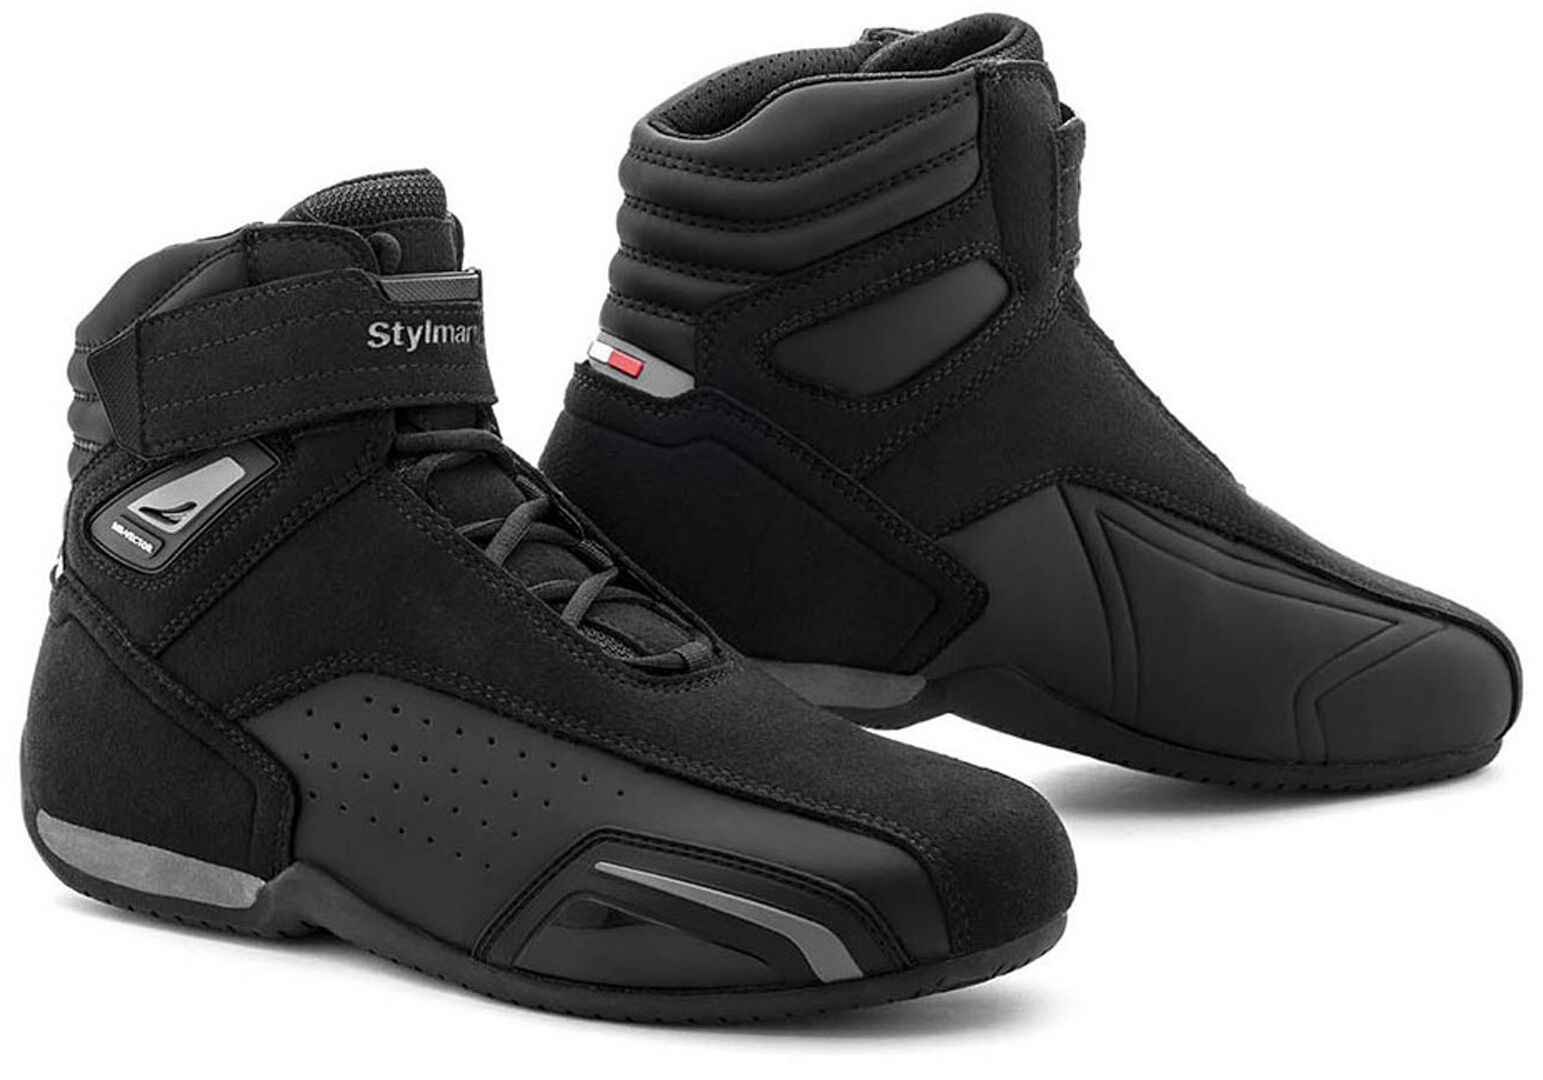 Stylmartin Vector Air Zapatos de moto - Negro (39)